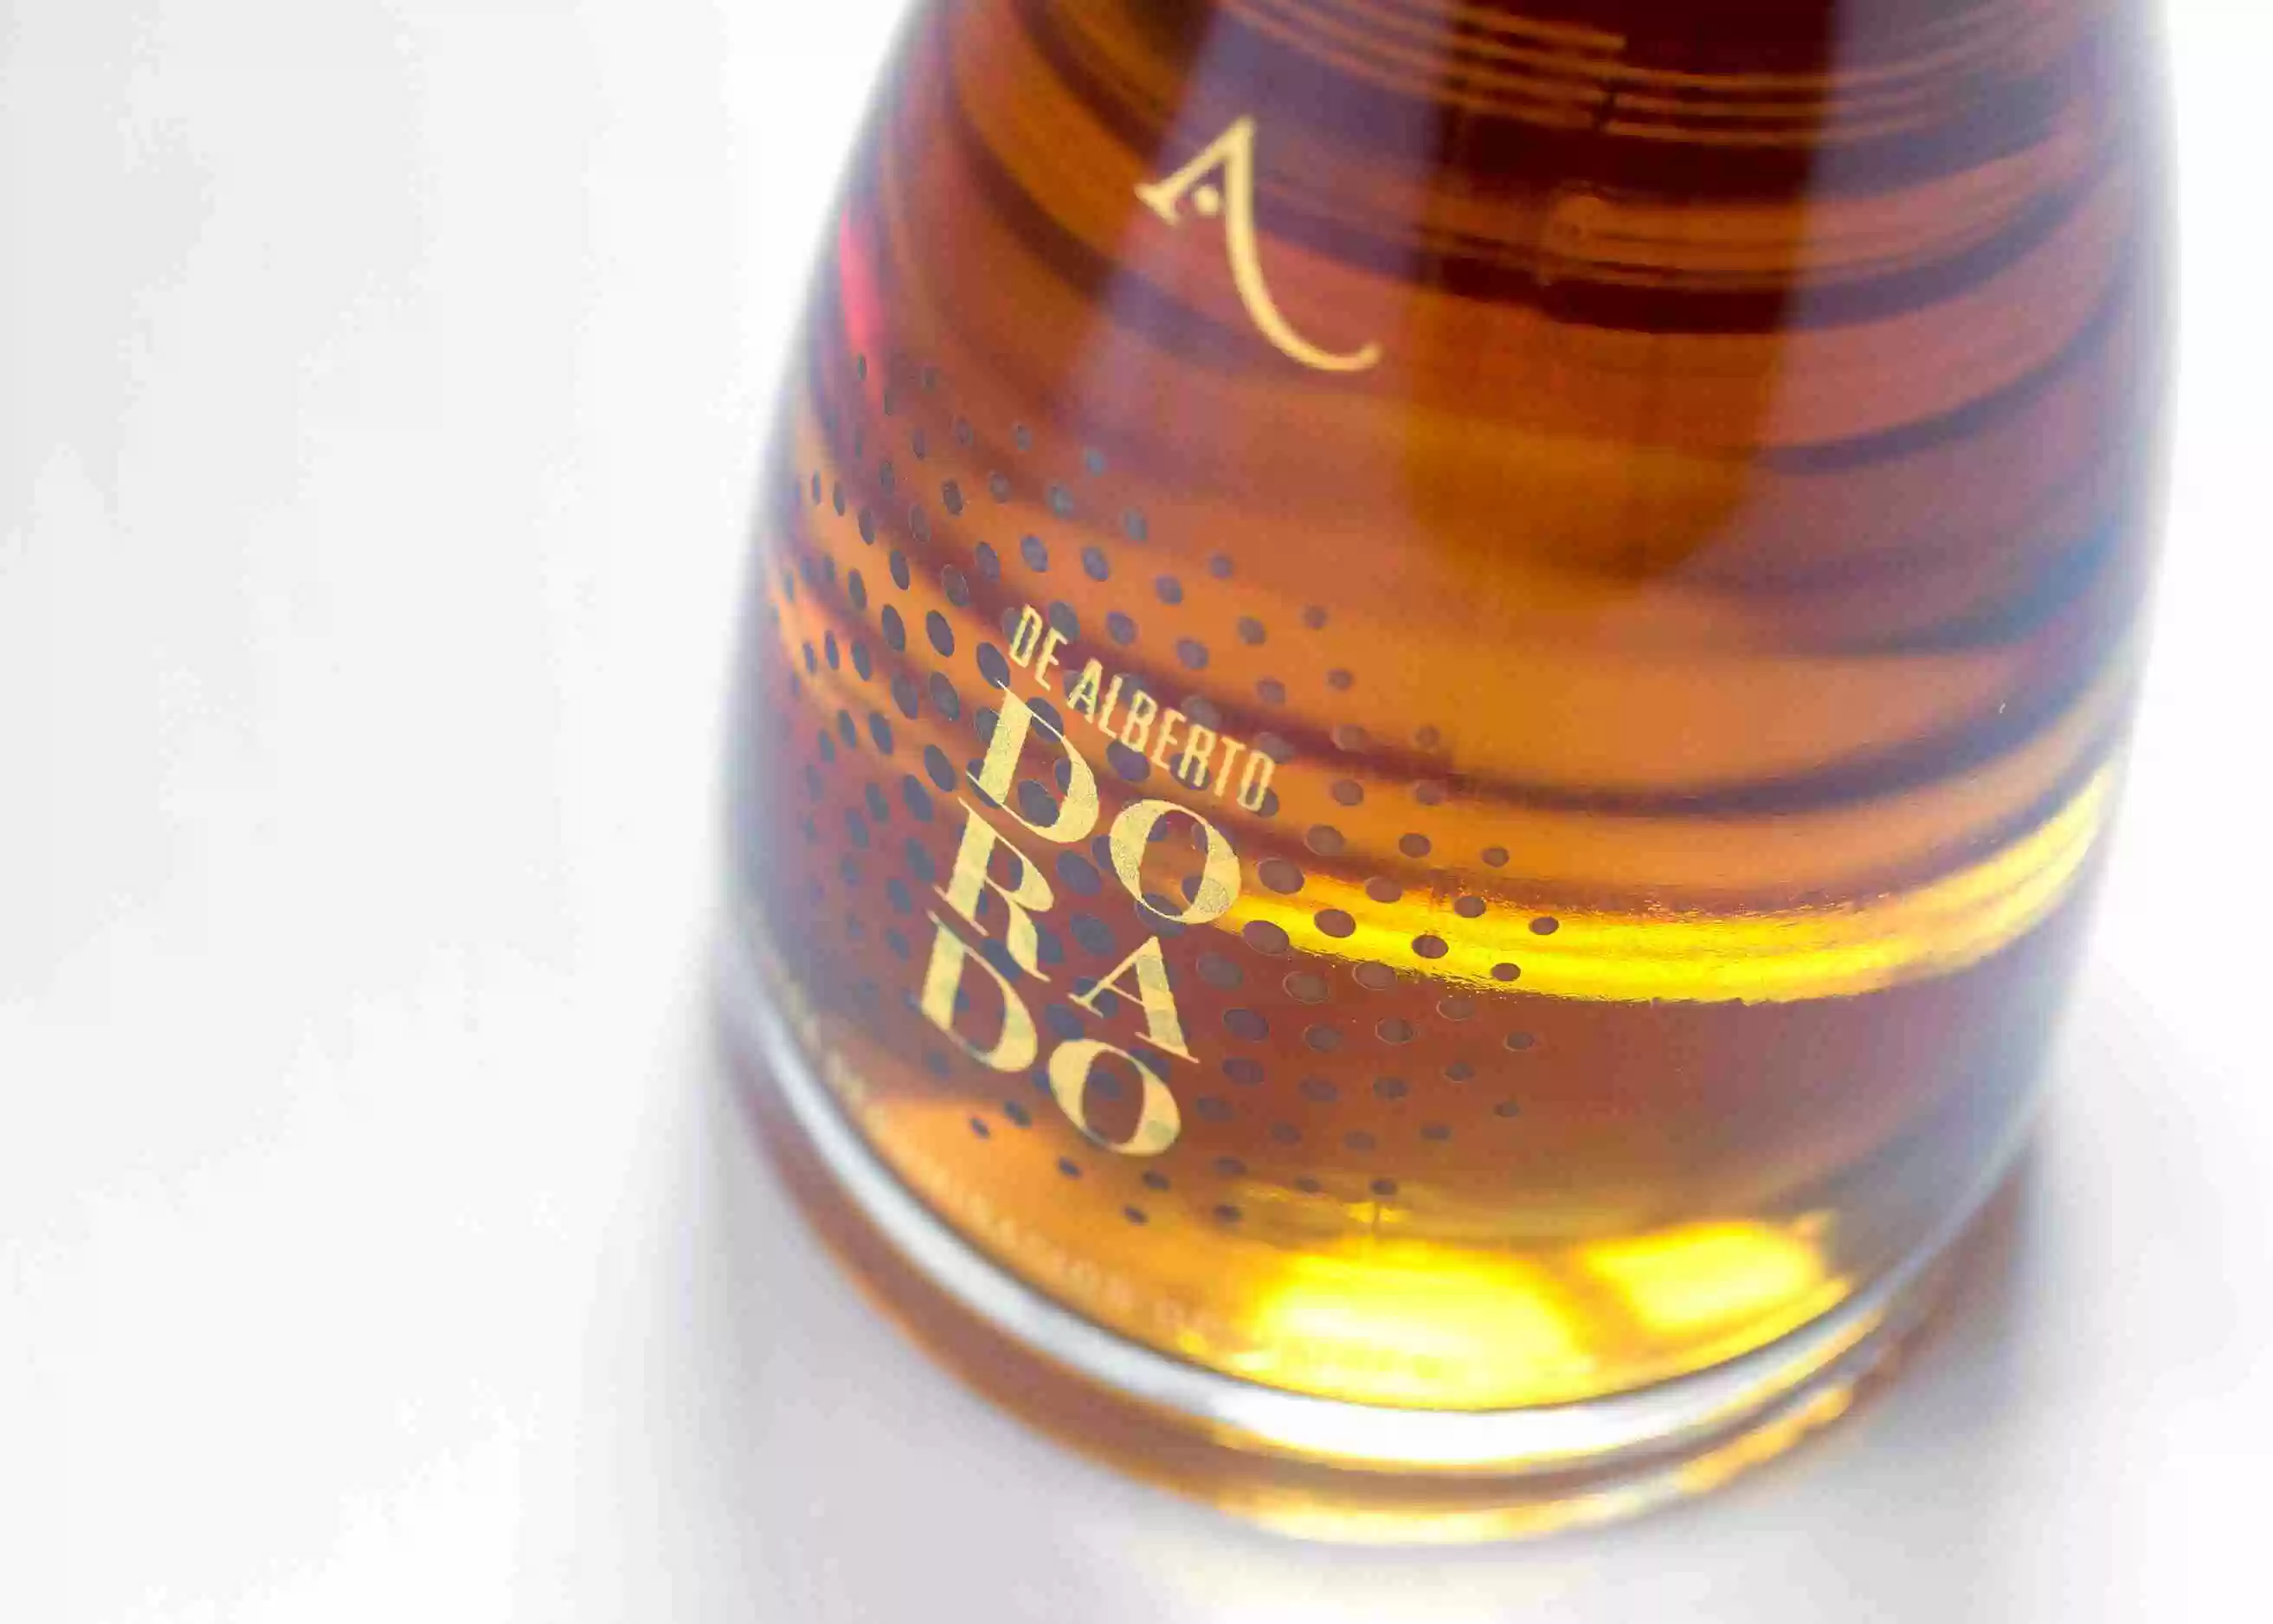 DeAlberto Dorado — Diseño de etiqueta de vino